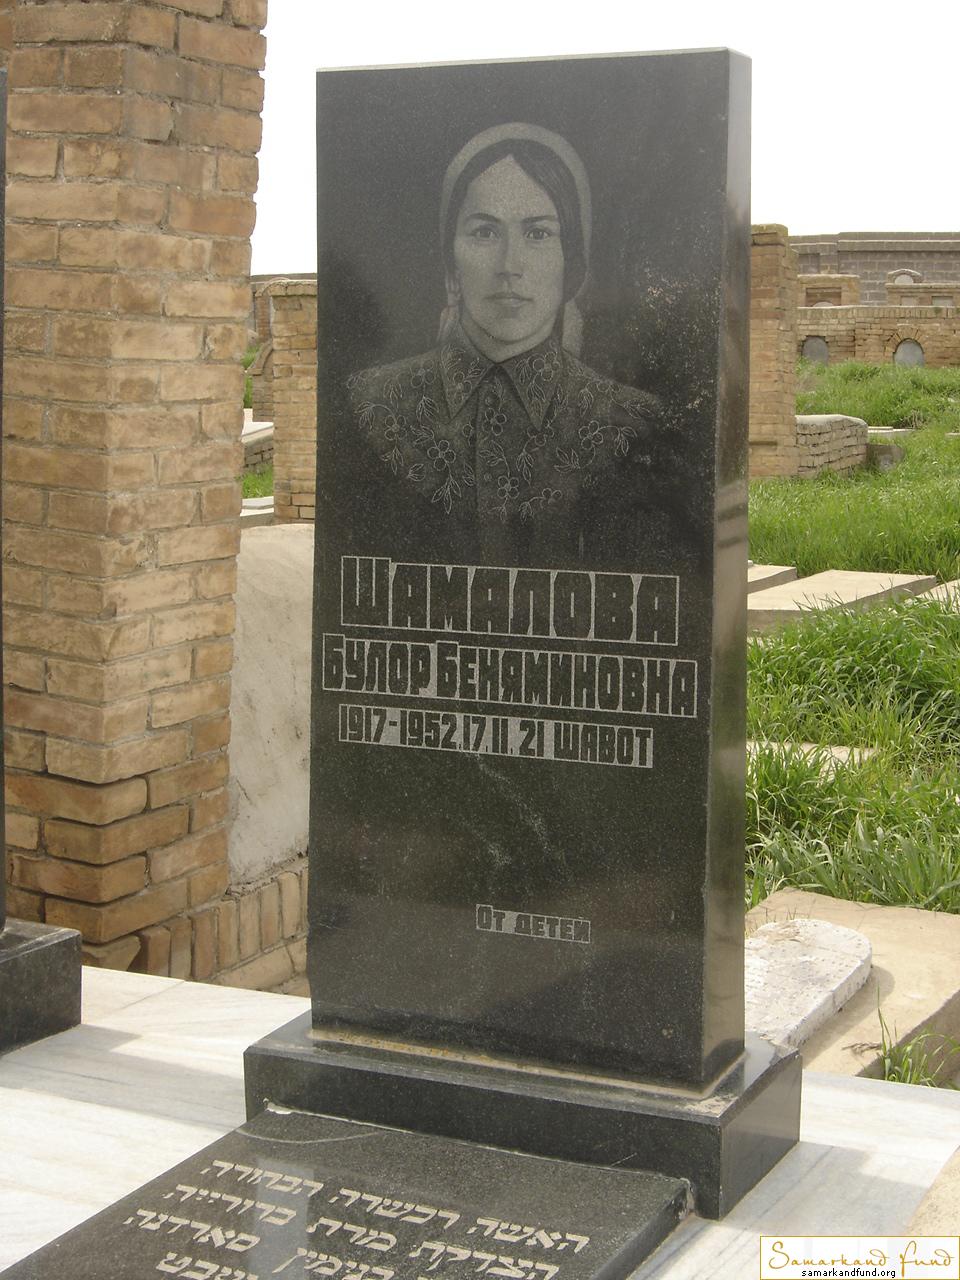 Шамалова Булор Беняминовна  1917 - 17.02.1952 зах. 160.59  №25.JPG